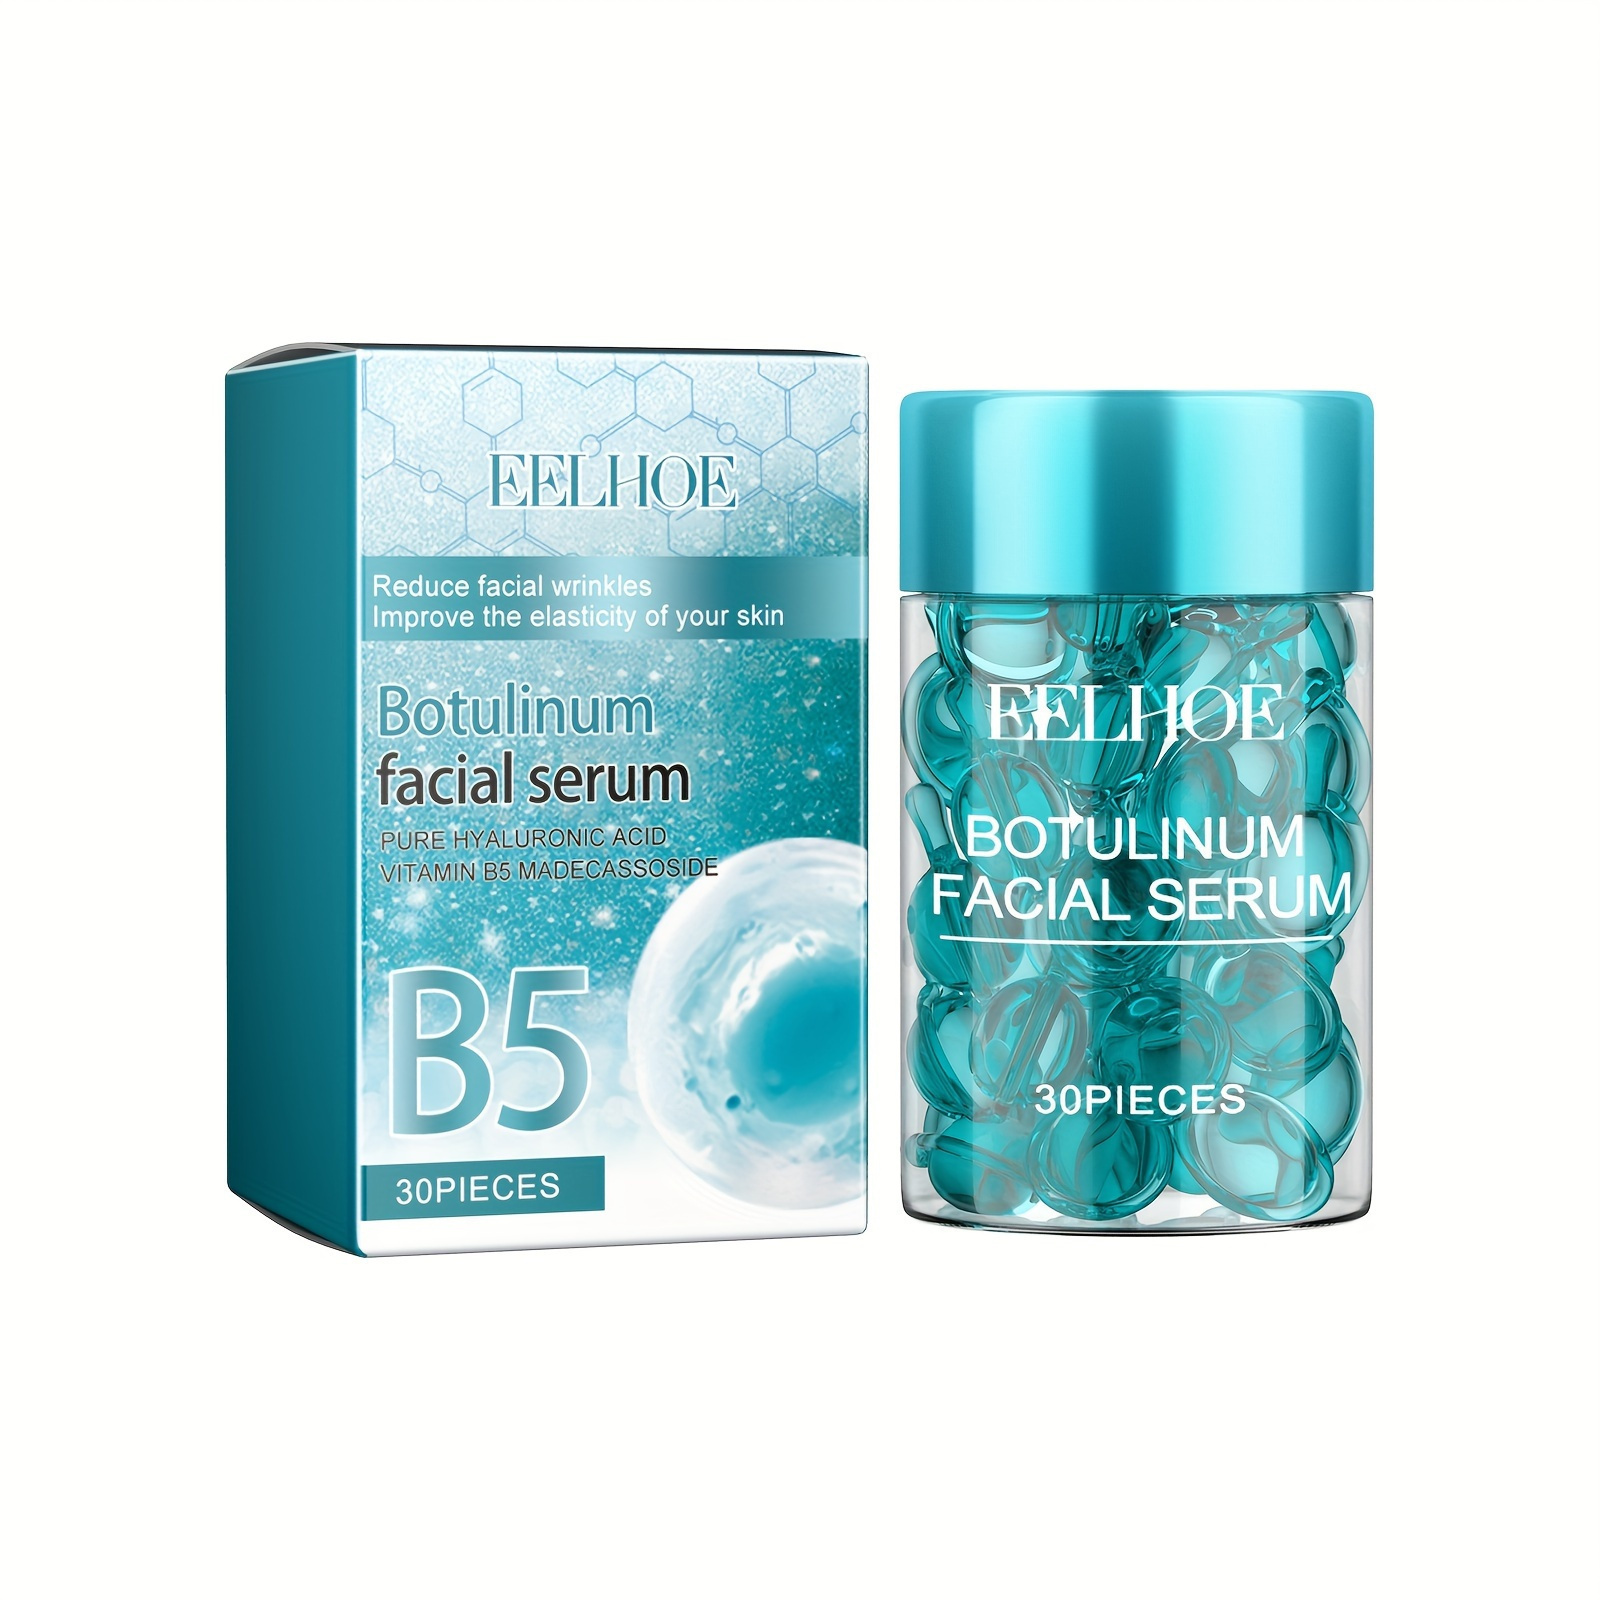 

Sérum facial au botulinum, 30 capsules de vitamine B5, acide hyaluronique, hydratation et raffermissement de la peau, hydratante douce pour une meilleure élasticité de la peau.